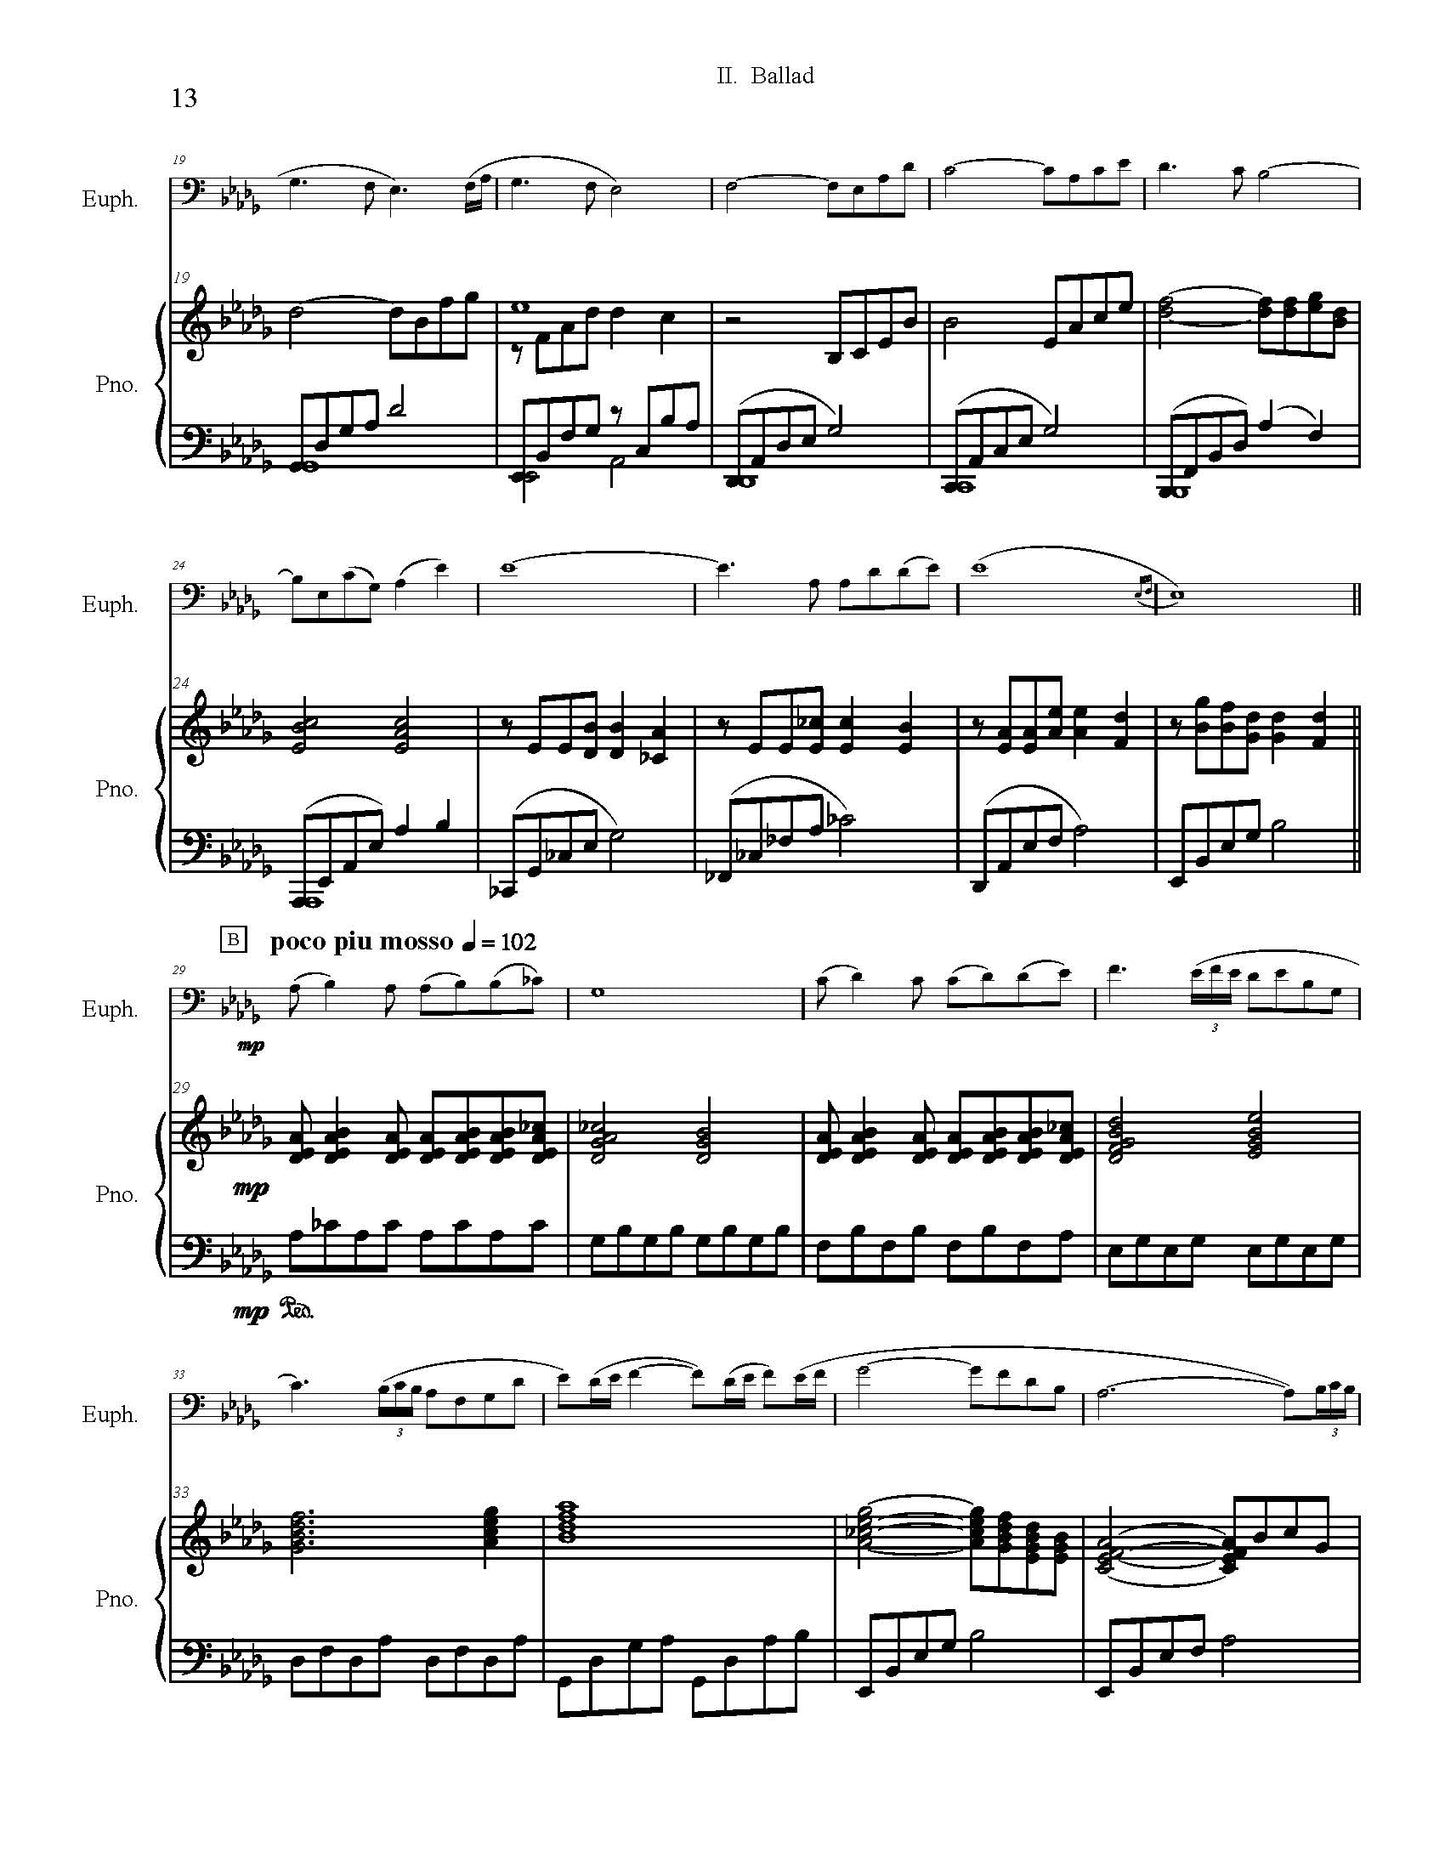 O'Toole, Anthony - Euphonium Concerto No. 1